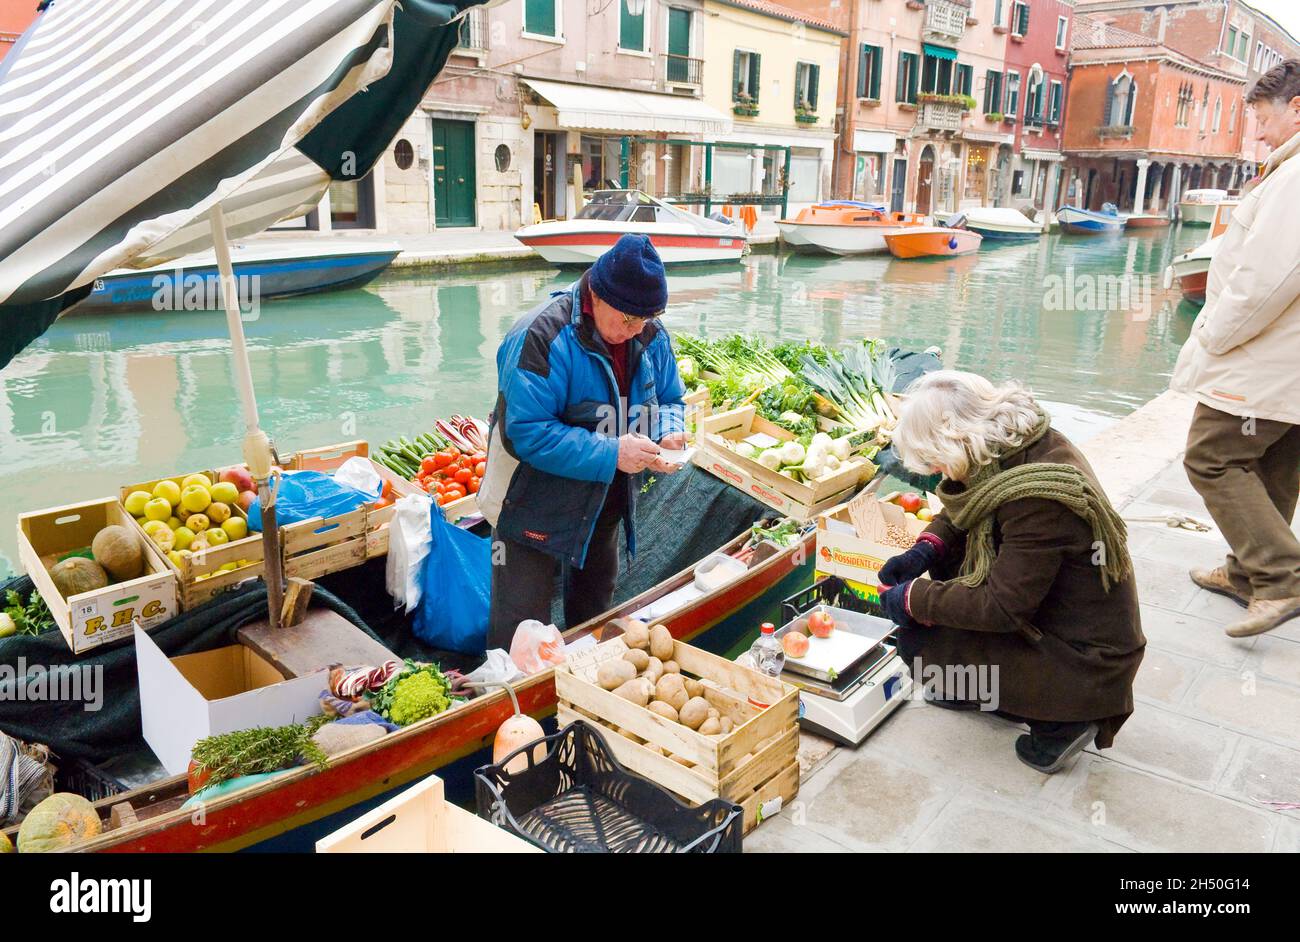 Ein Bootsladen an einem venezianischen Kanal, der Obst und Gemüse verkauft frisch gepflückte Äpfel. Stockfoto